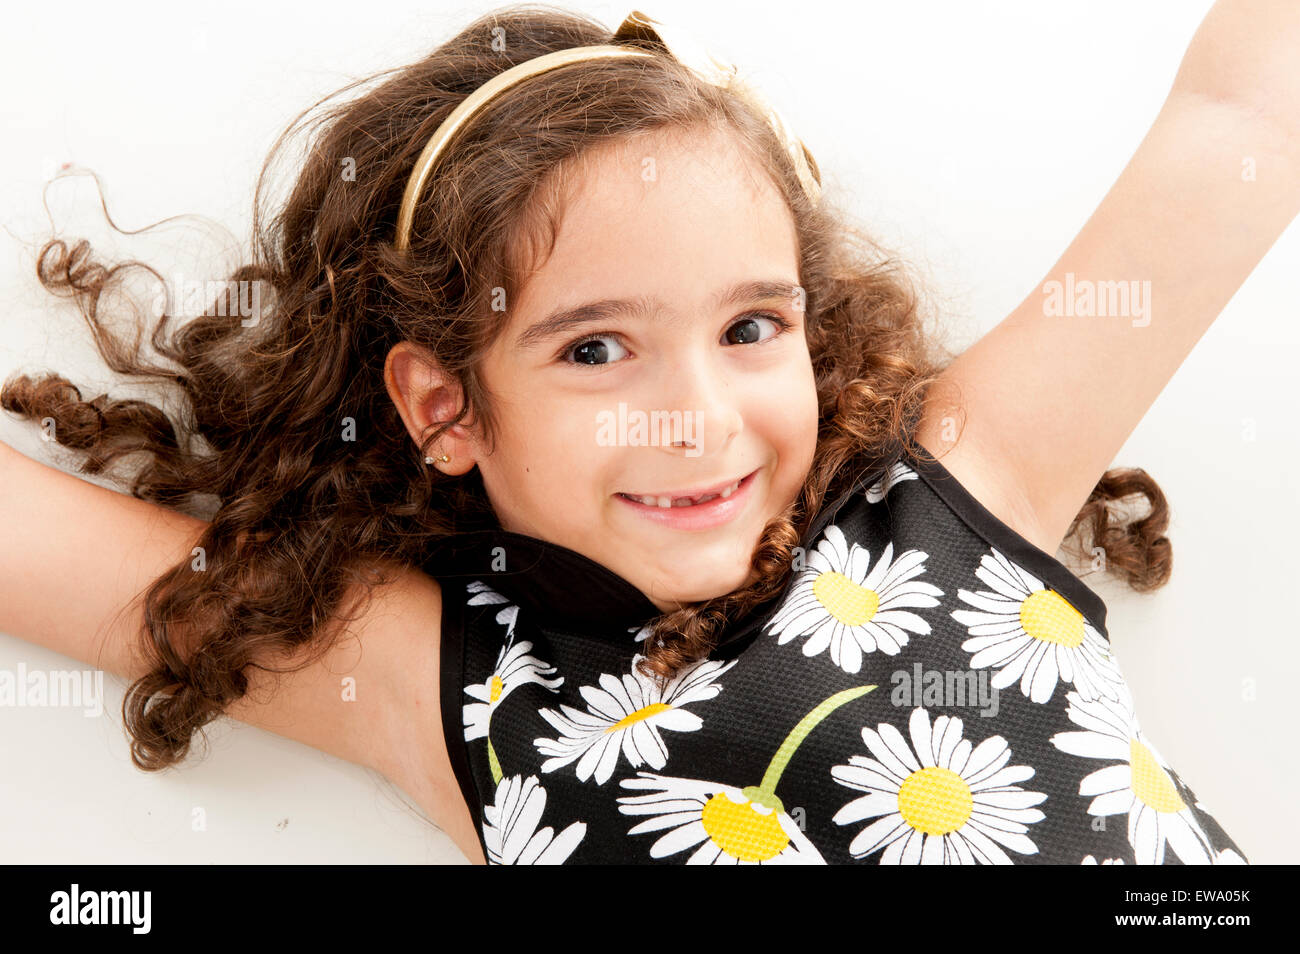 Giovani bambini carino smilling utilizzando vestire Foto Stock